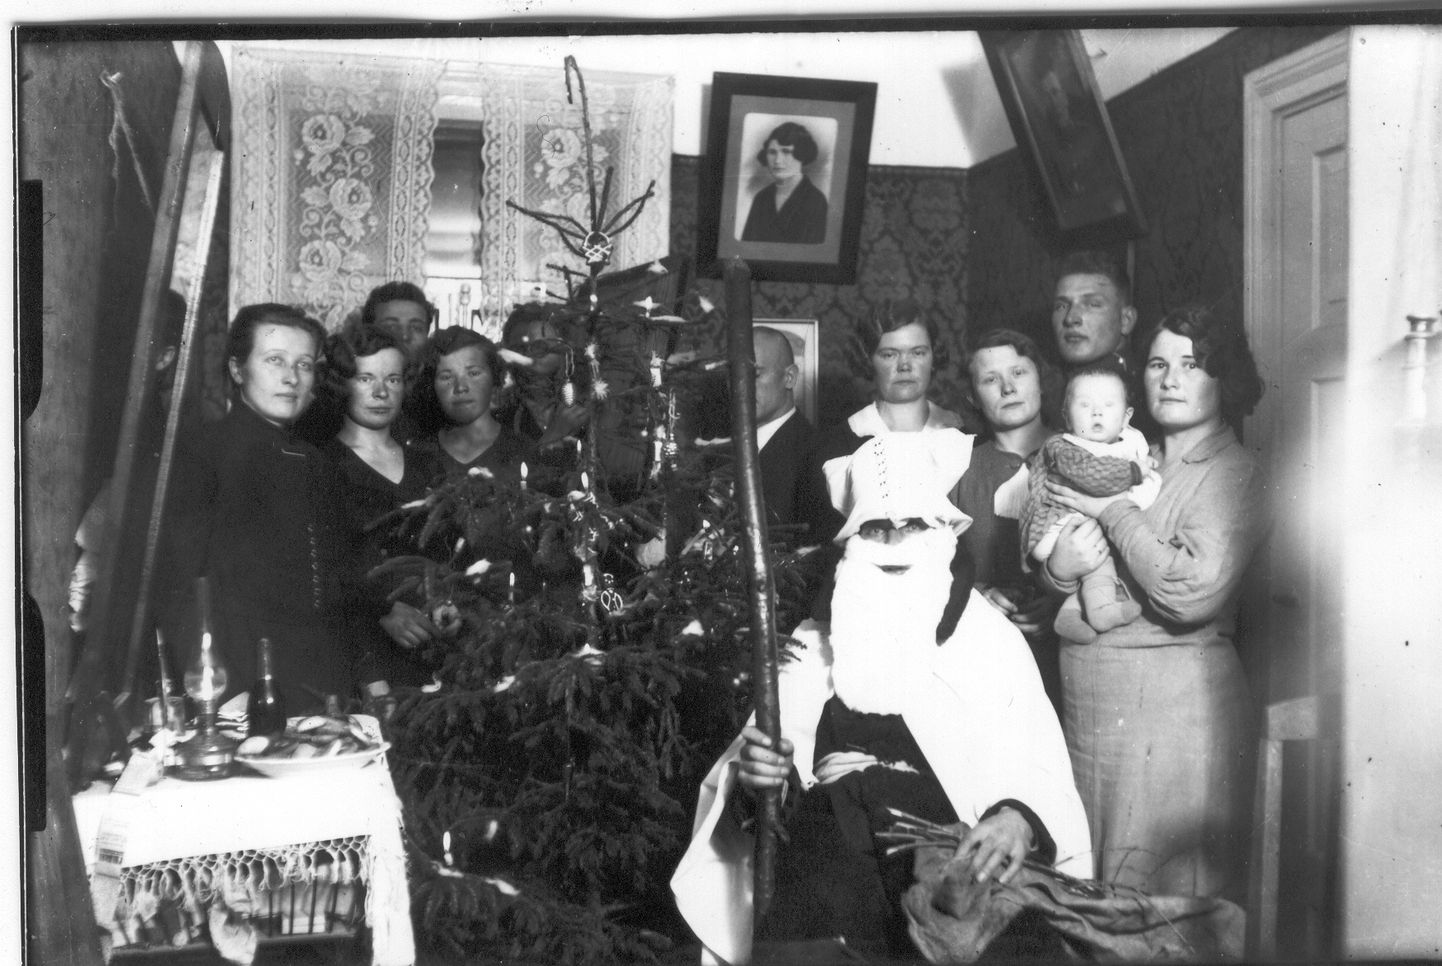 Nii nagu päike on alati pilve taga olemas, olid ka jõulud sajand tagasi täis värve, lihtsalt fotograafia suutis edastada vaid mustvalget. Pildil jõuluõhtu 1920. aastatel Võrumaal Linnamäe taluperes. Kesksel kohal on küll vitsakimbuga jõuluvana, kuid mitte ühtegi luuletust lugevat last. Foto arvatav autor G. Mikkelsaar.